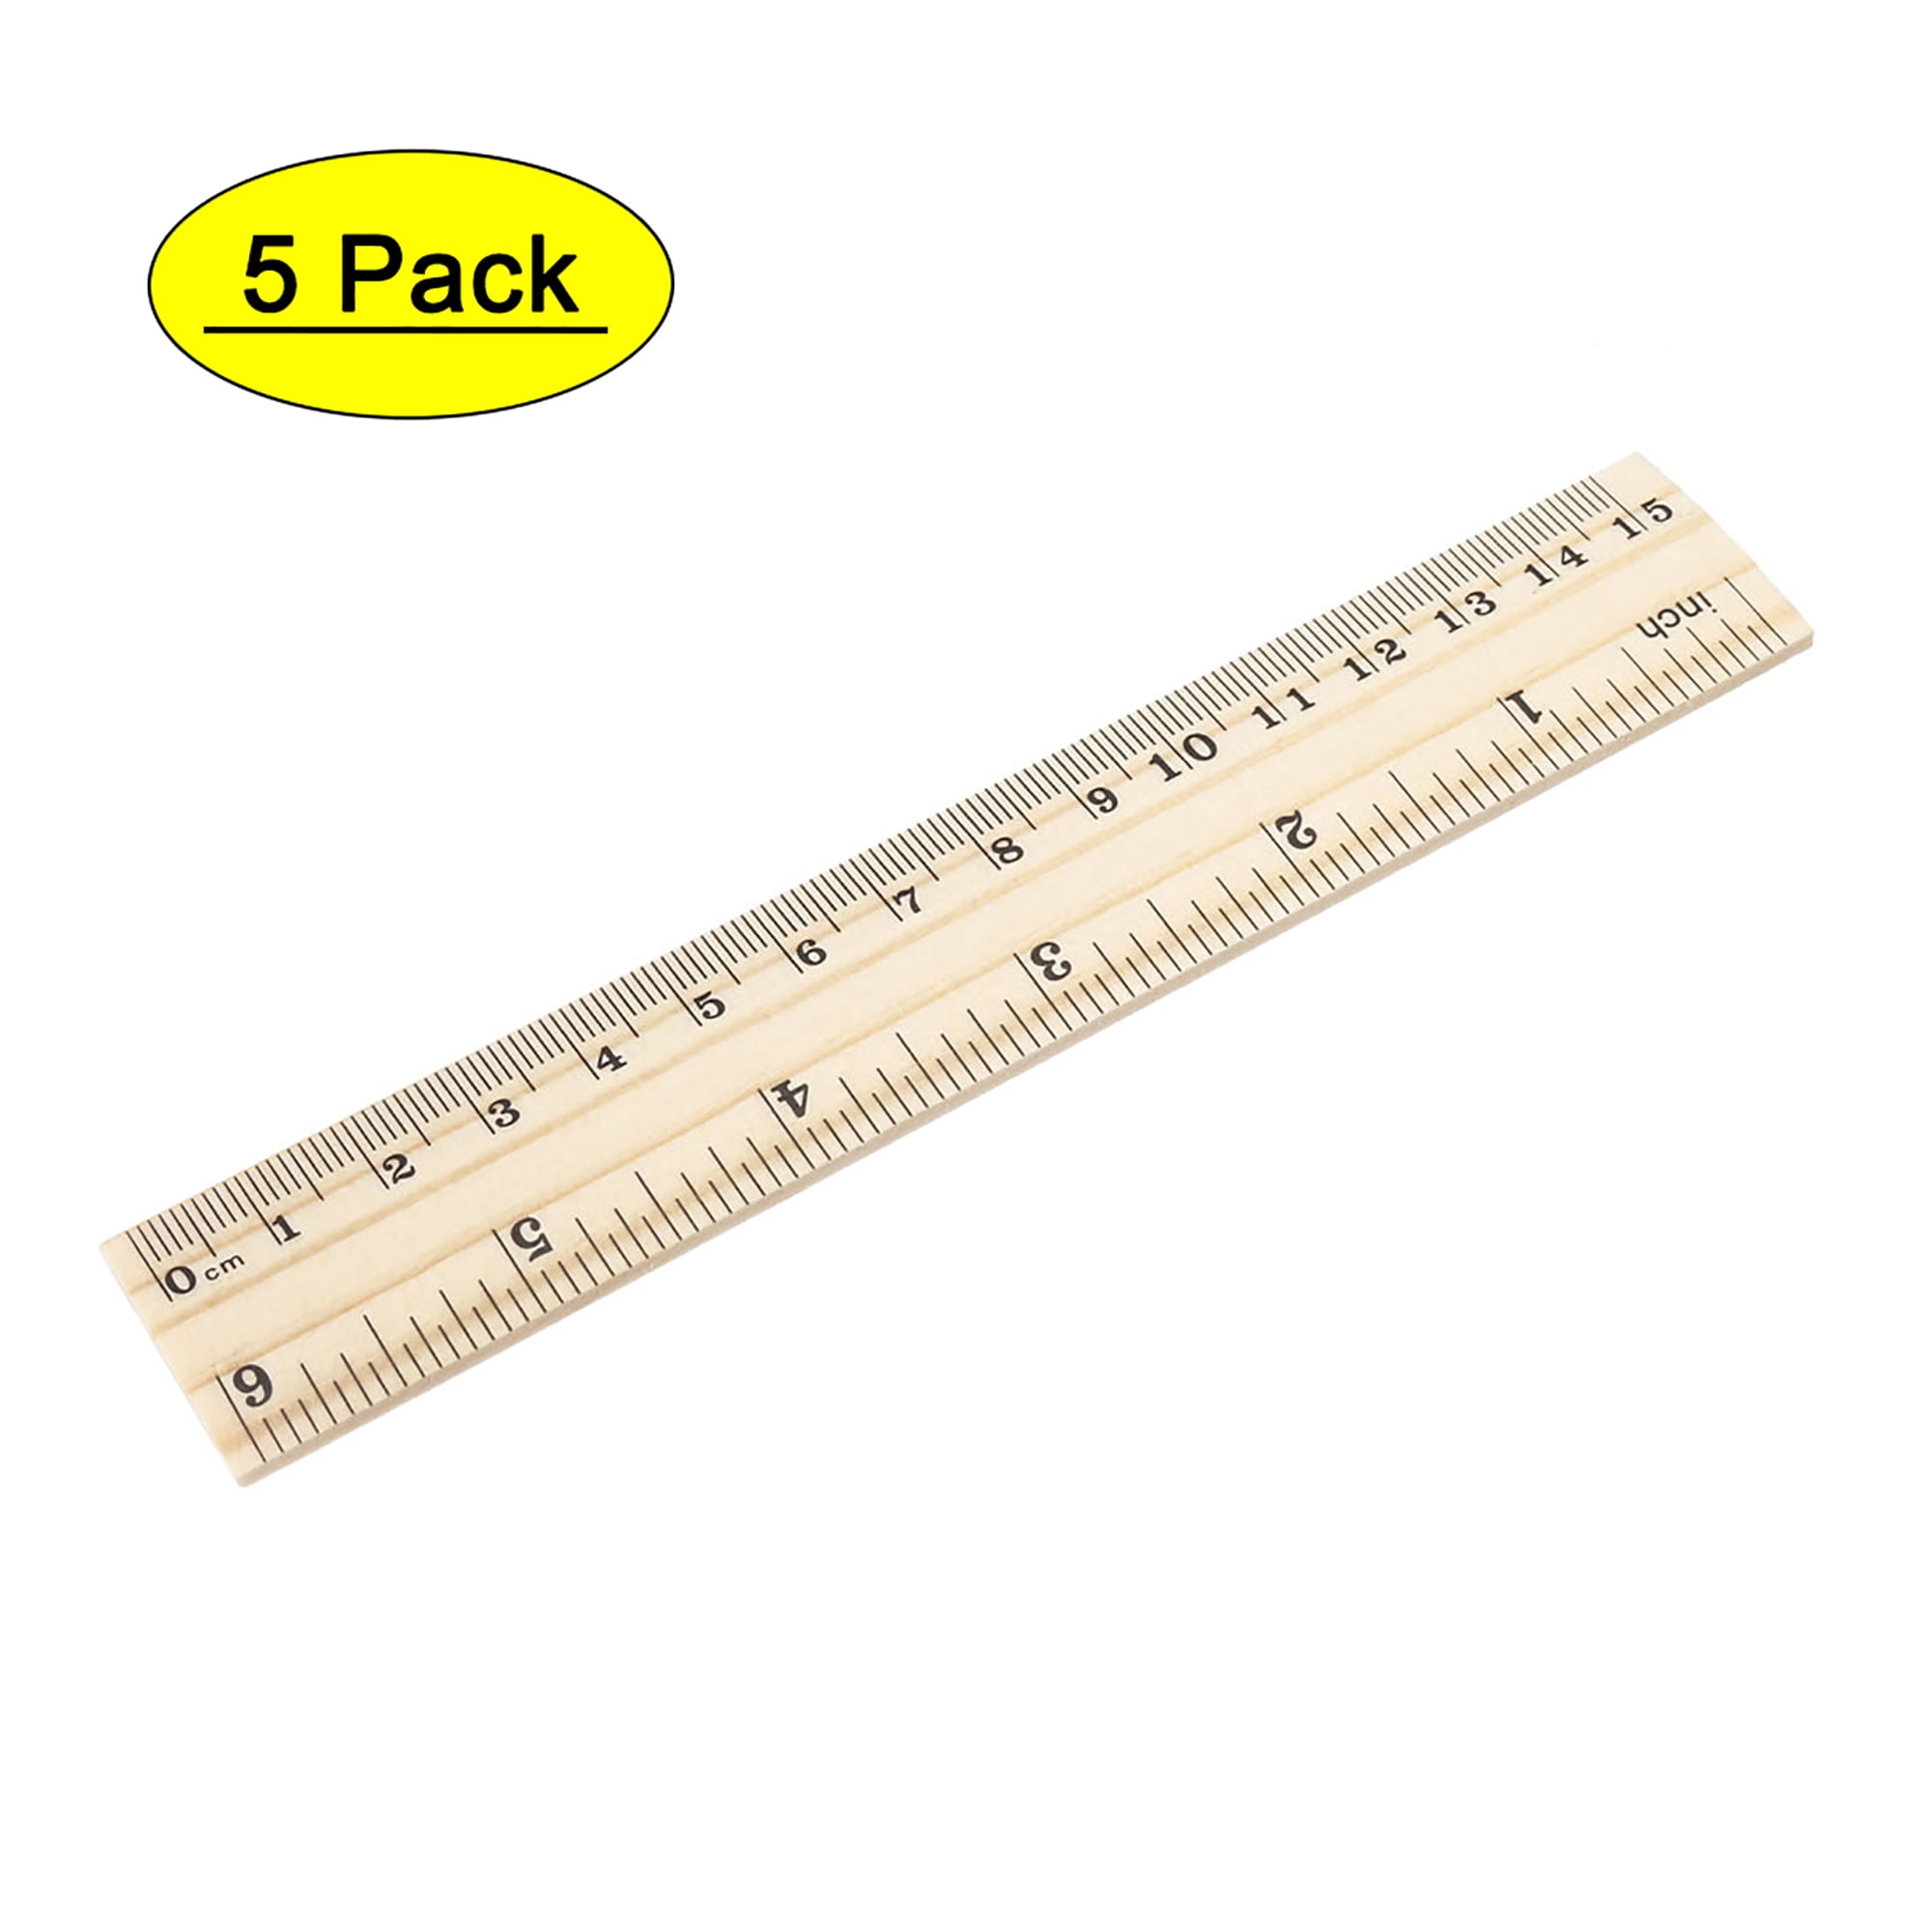 10 6 Wood Ruler, Measuring Tool, School Ruler, Teacher Ruler